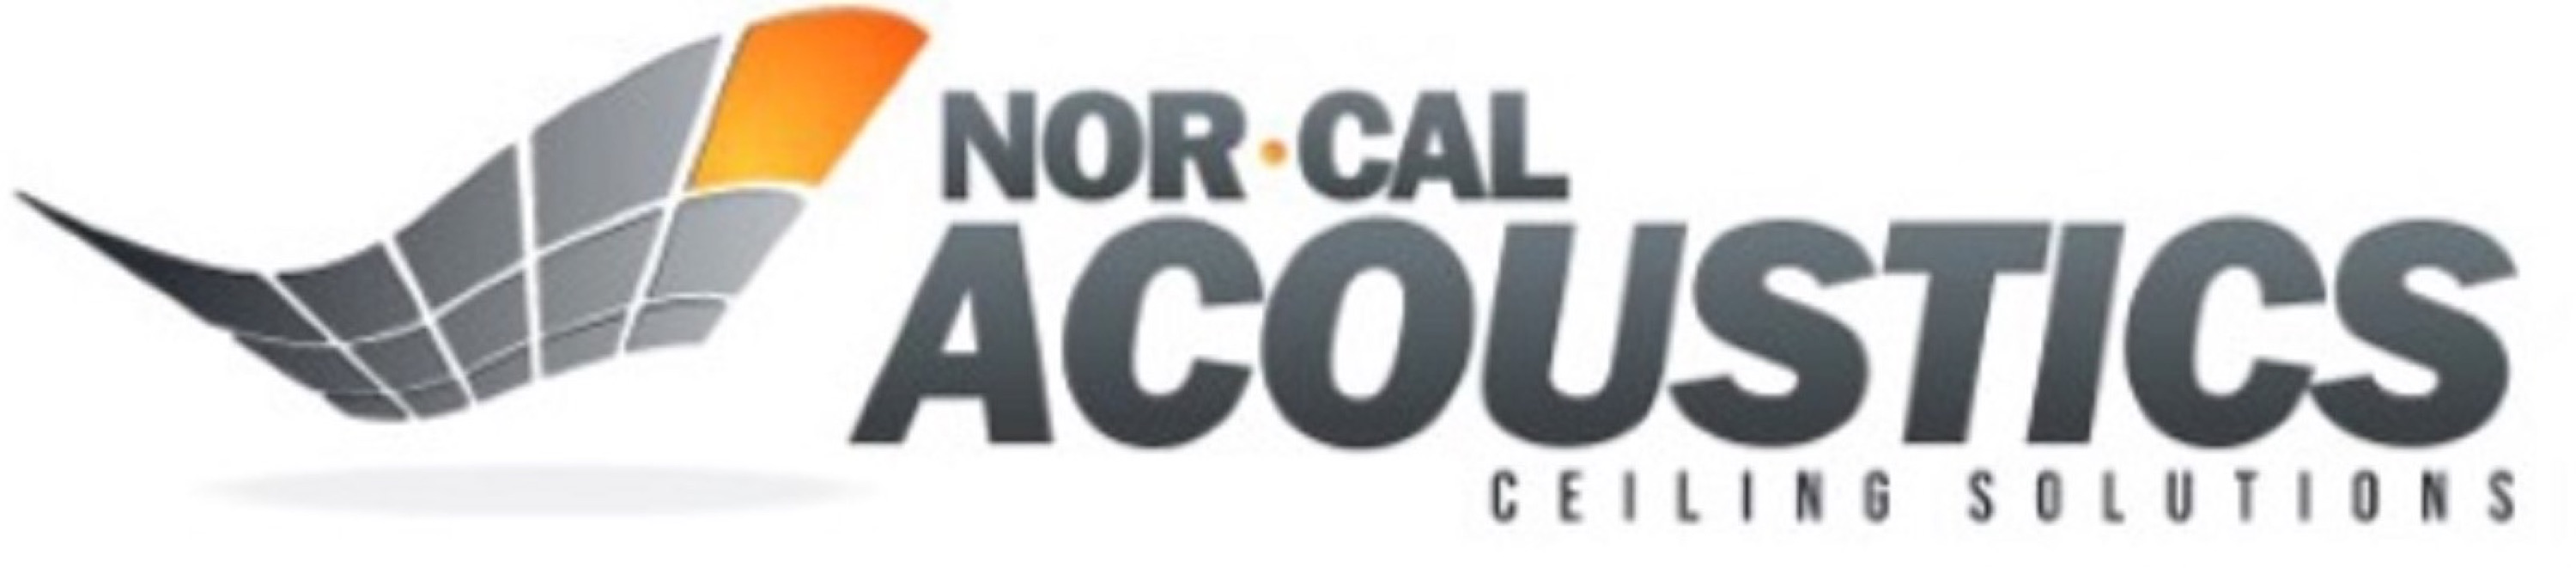 NOR - CAL Acoustics Logo